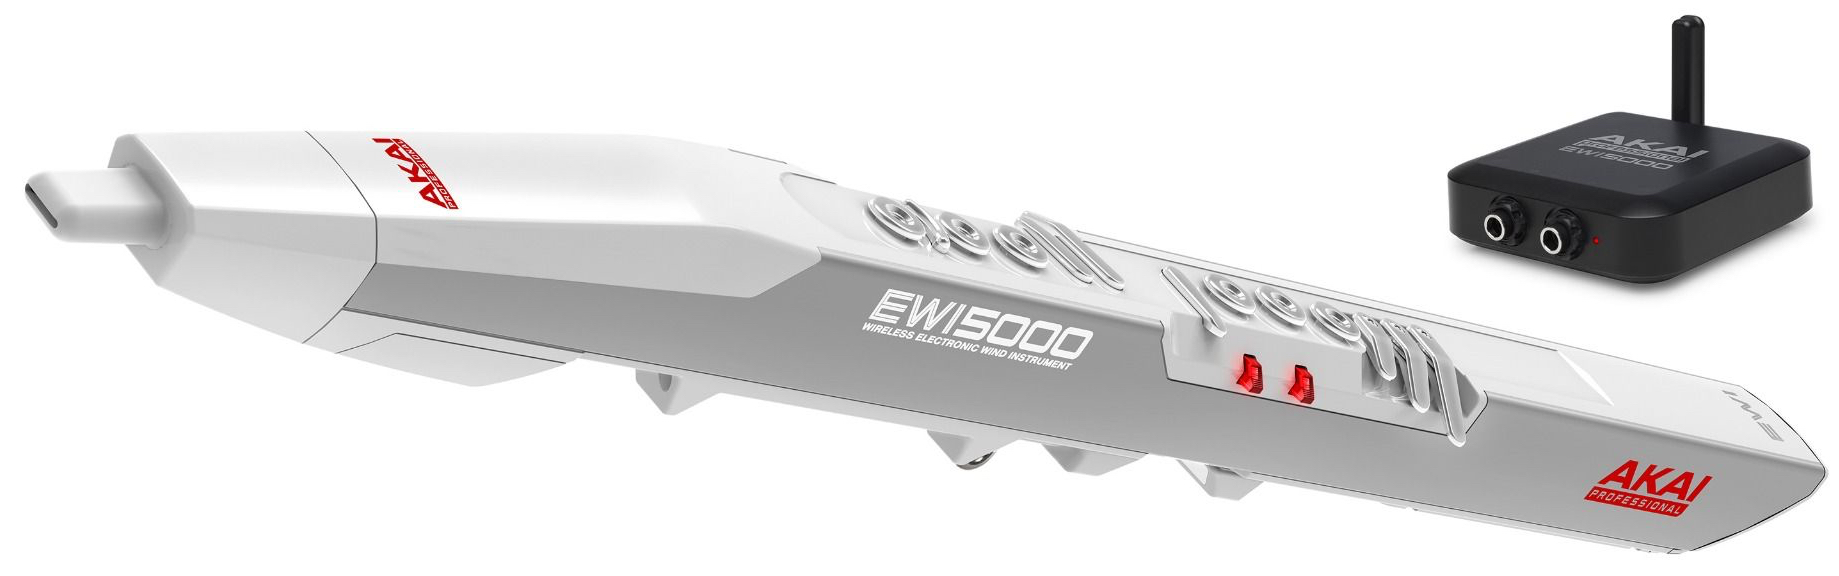 Akai Professional EWI 5000 Instrument à Vent Électronique